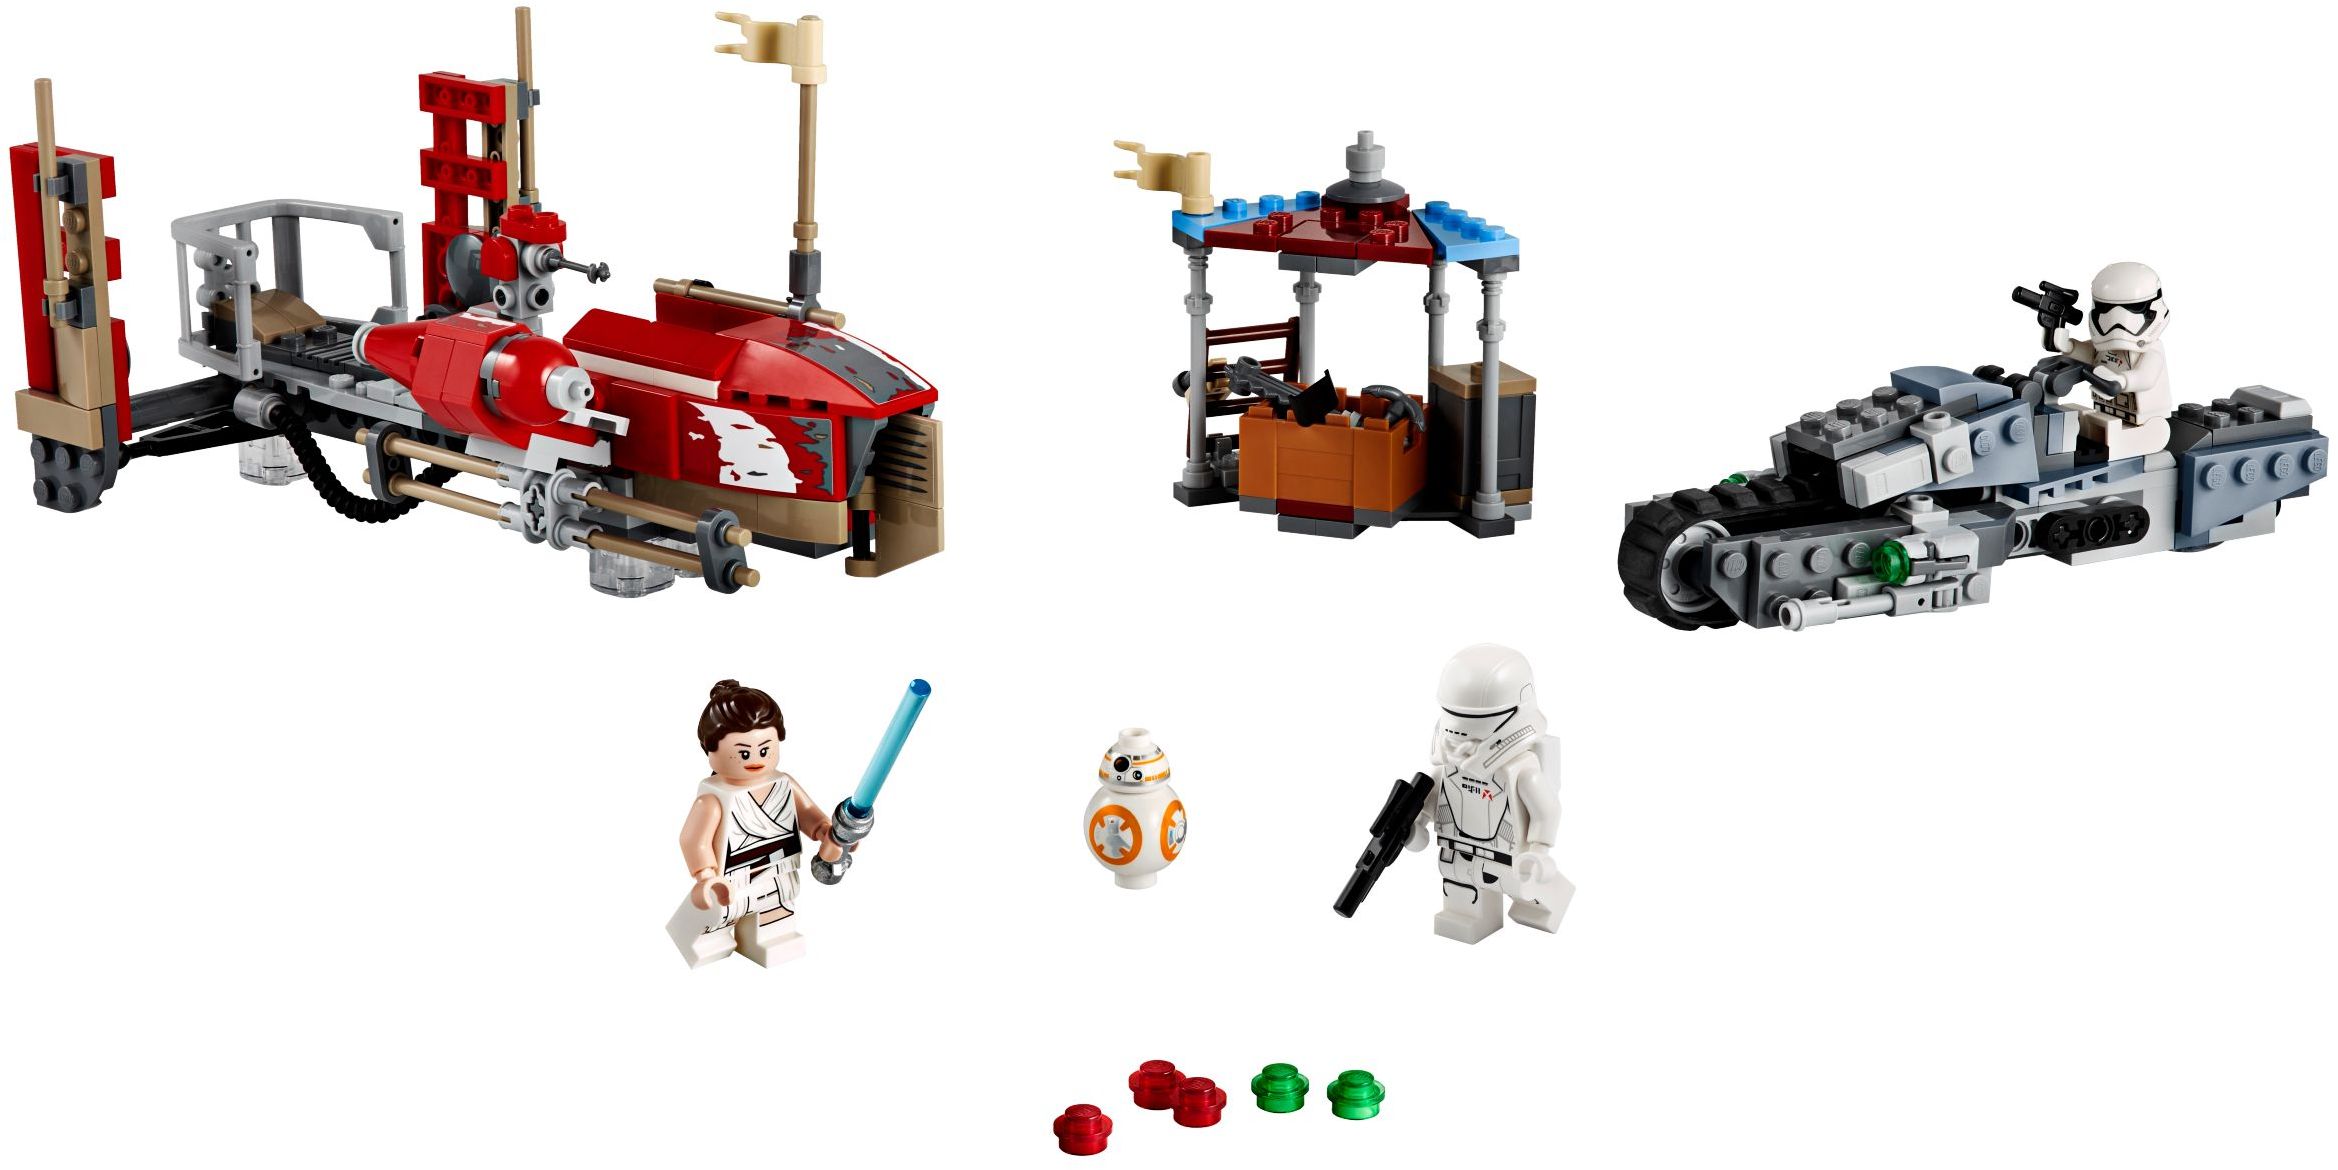 Star Wars | The Rise of Skywalker | Brickset: LEGO and database